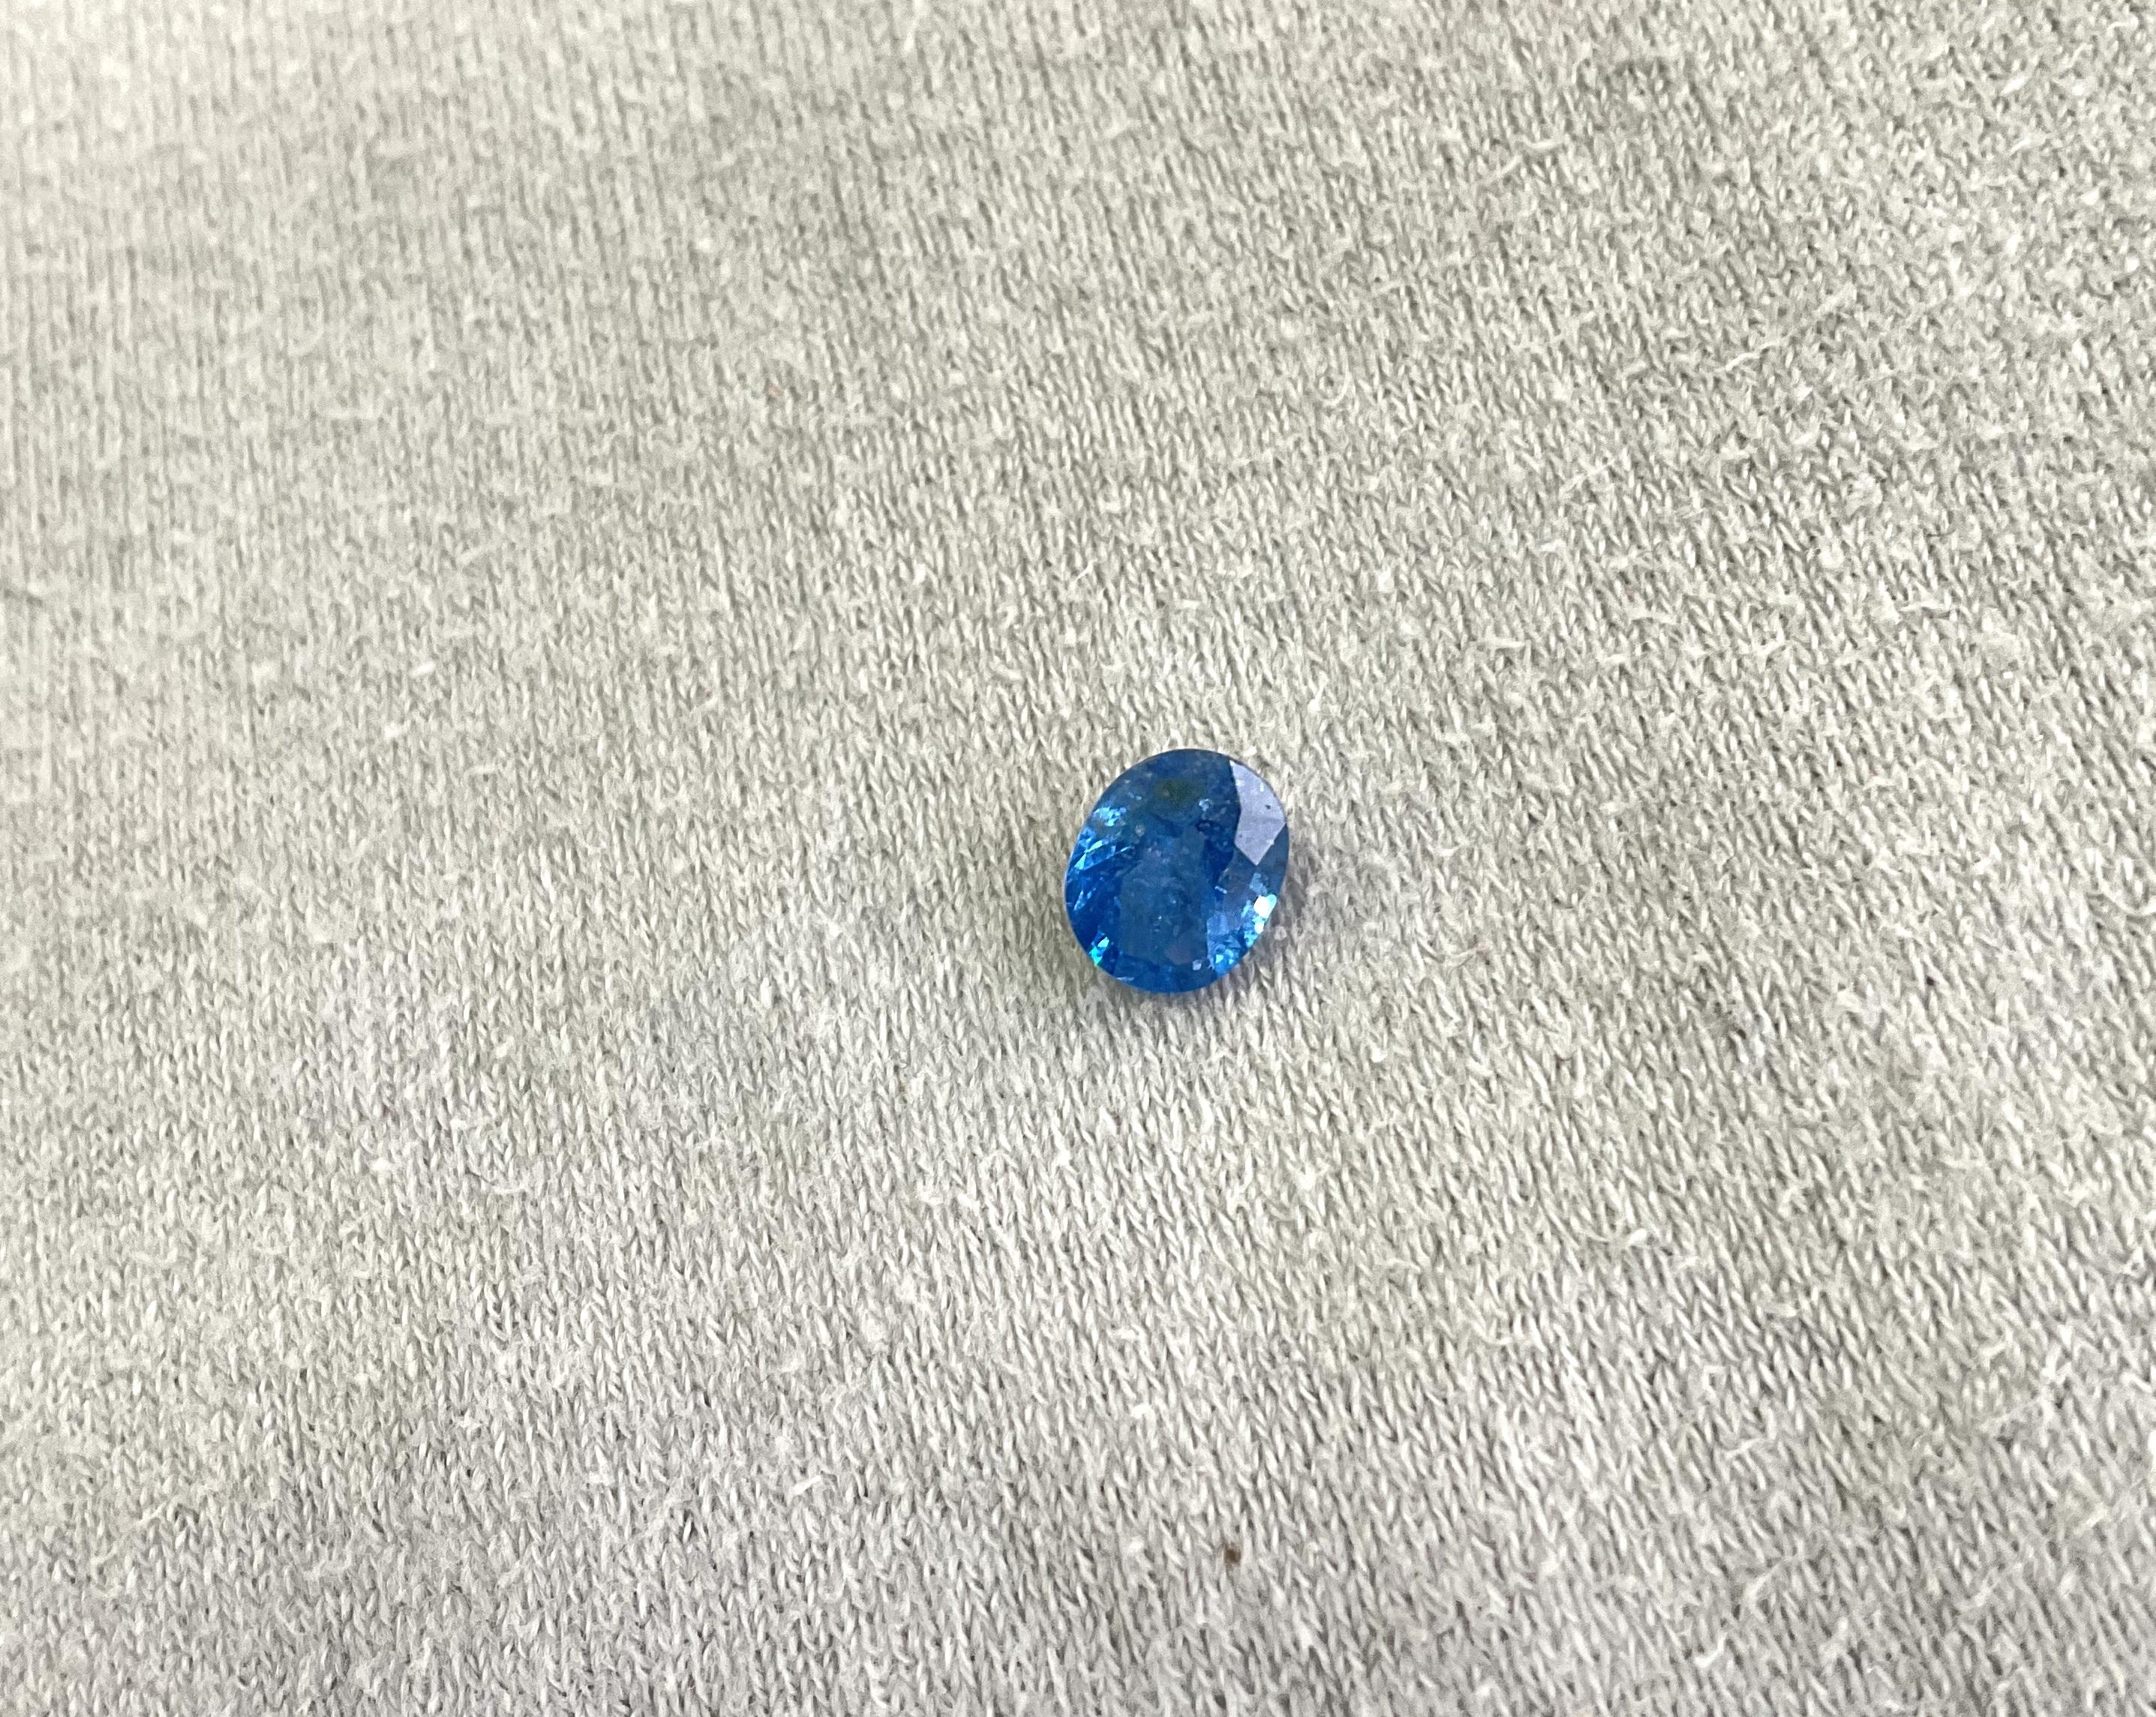 Taille ovale Spinelle bleu de Tanzanie facettée ovale de 1,11 carat pour bague joaillerie en vente